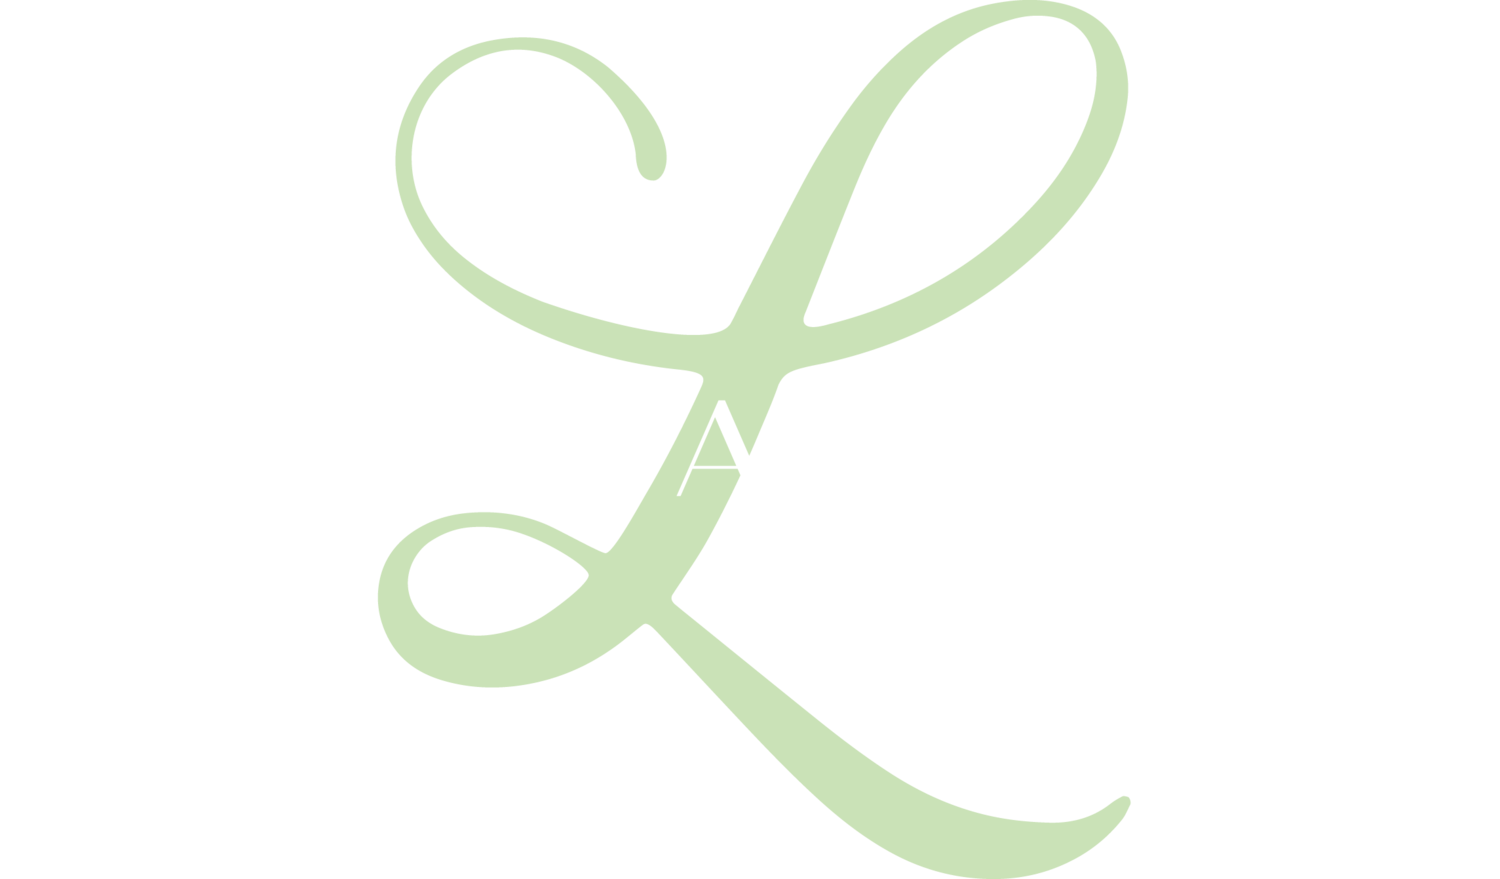 Lissa Warren PR